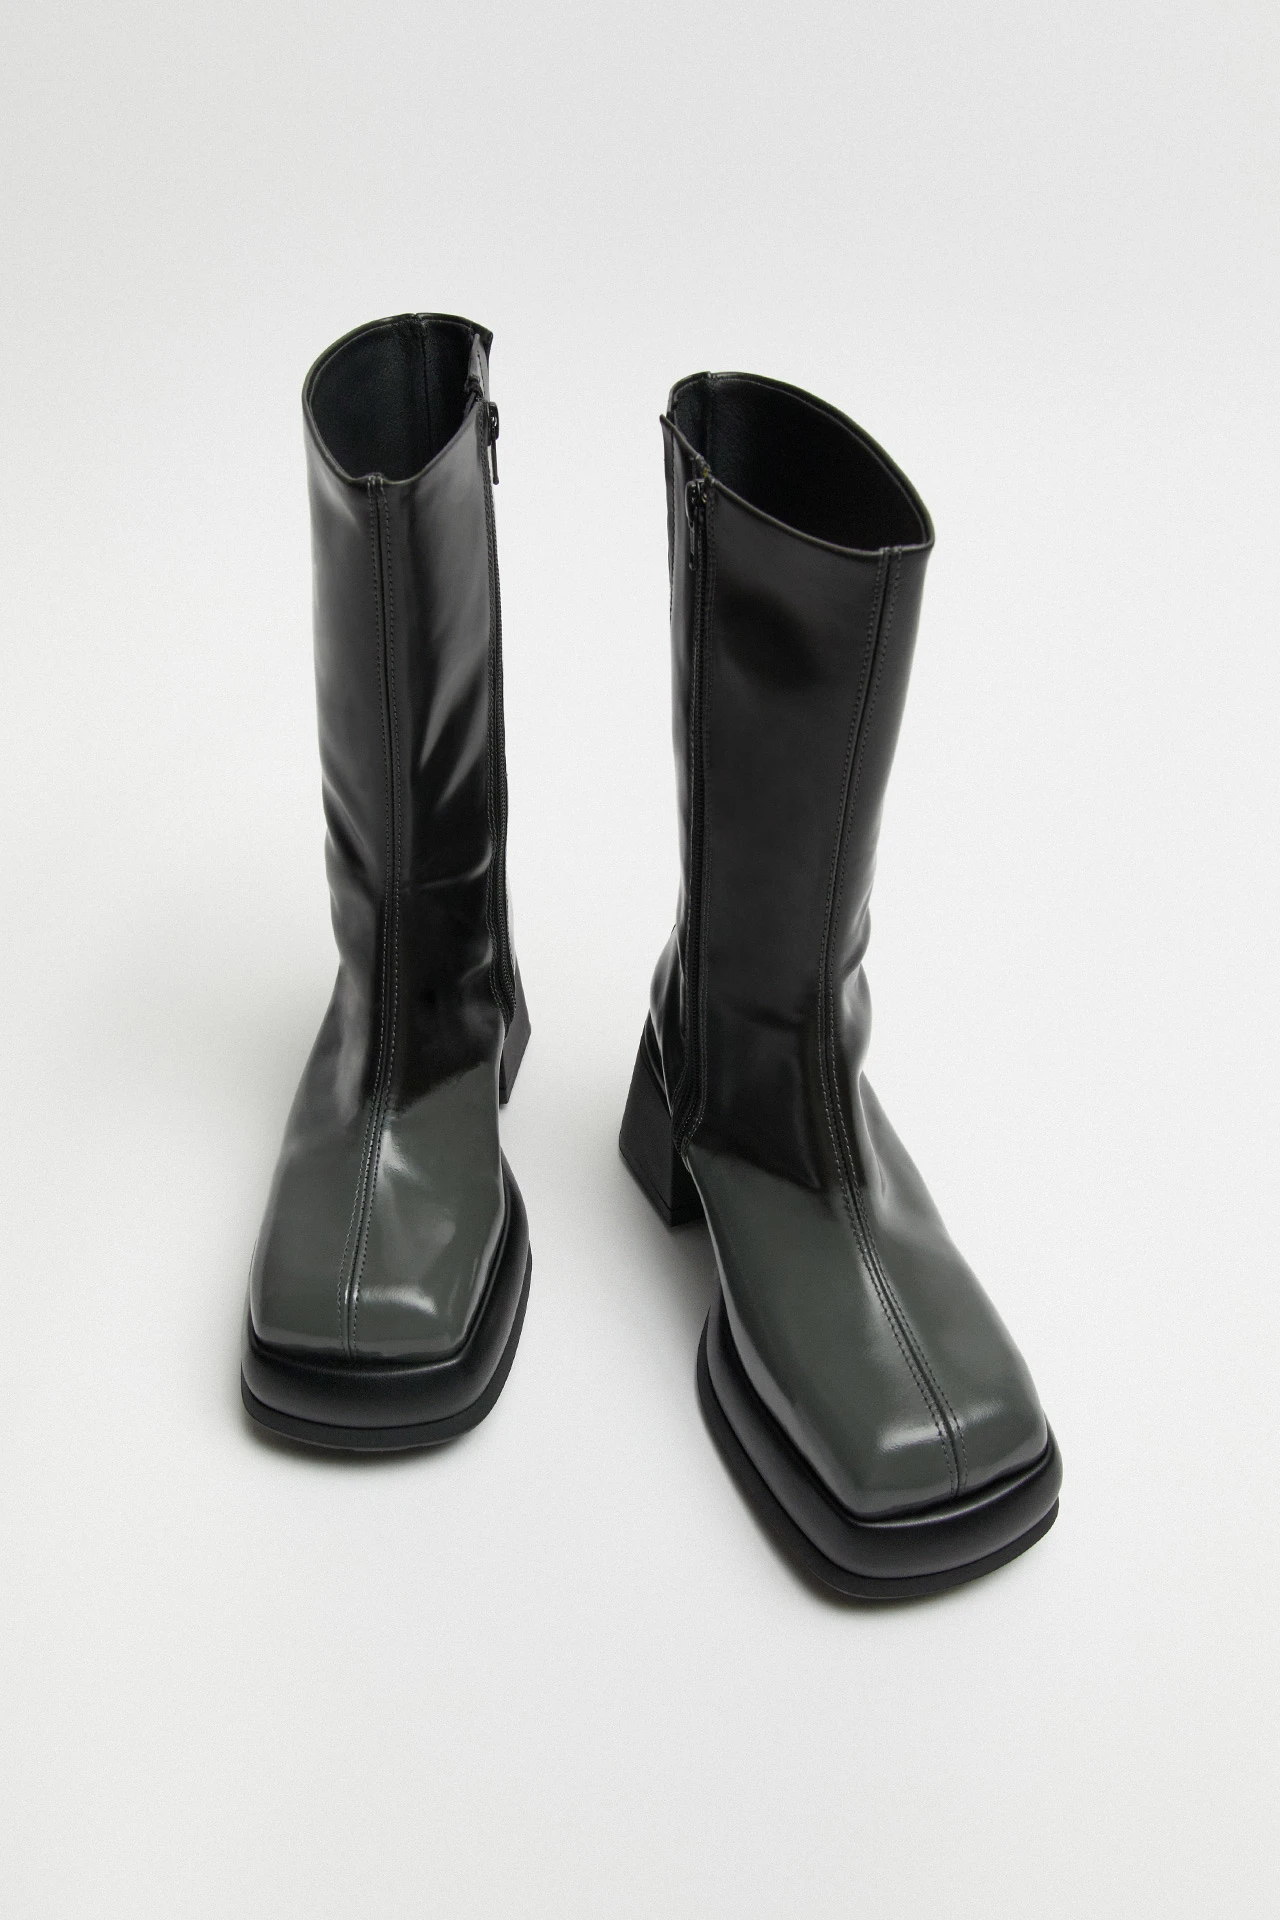 E8-cassia-grey-boots-04